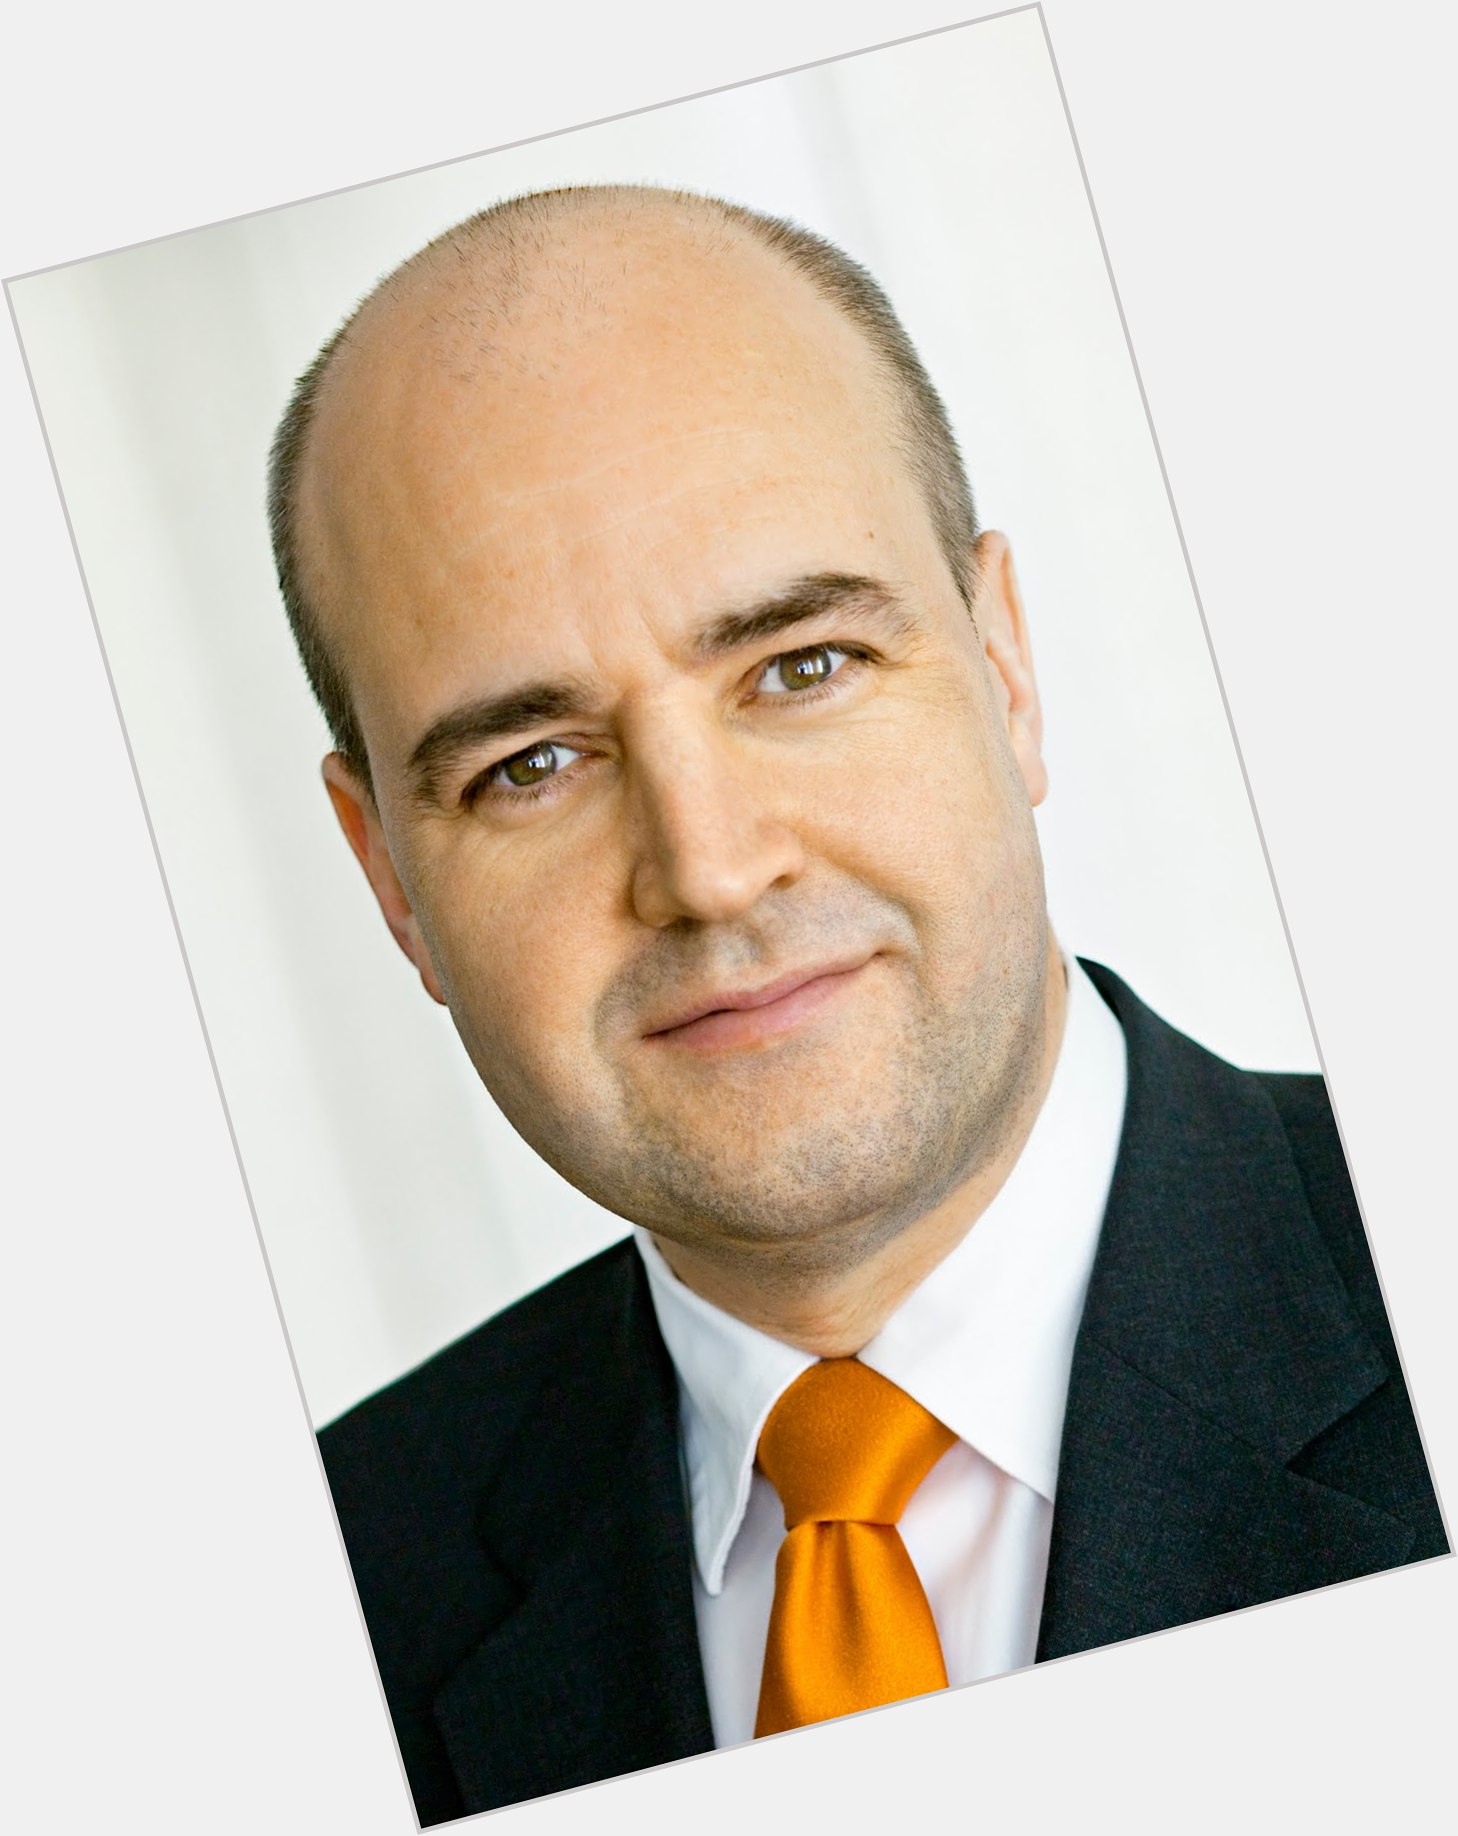 Fredrik Reinfeldt dating 2